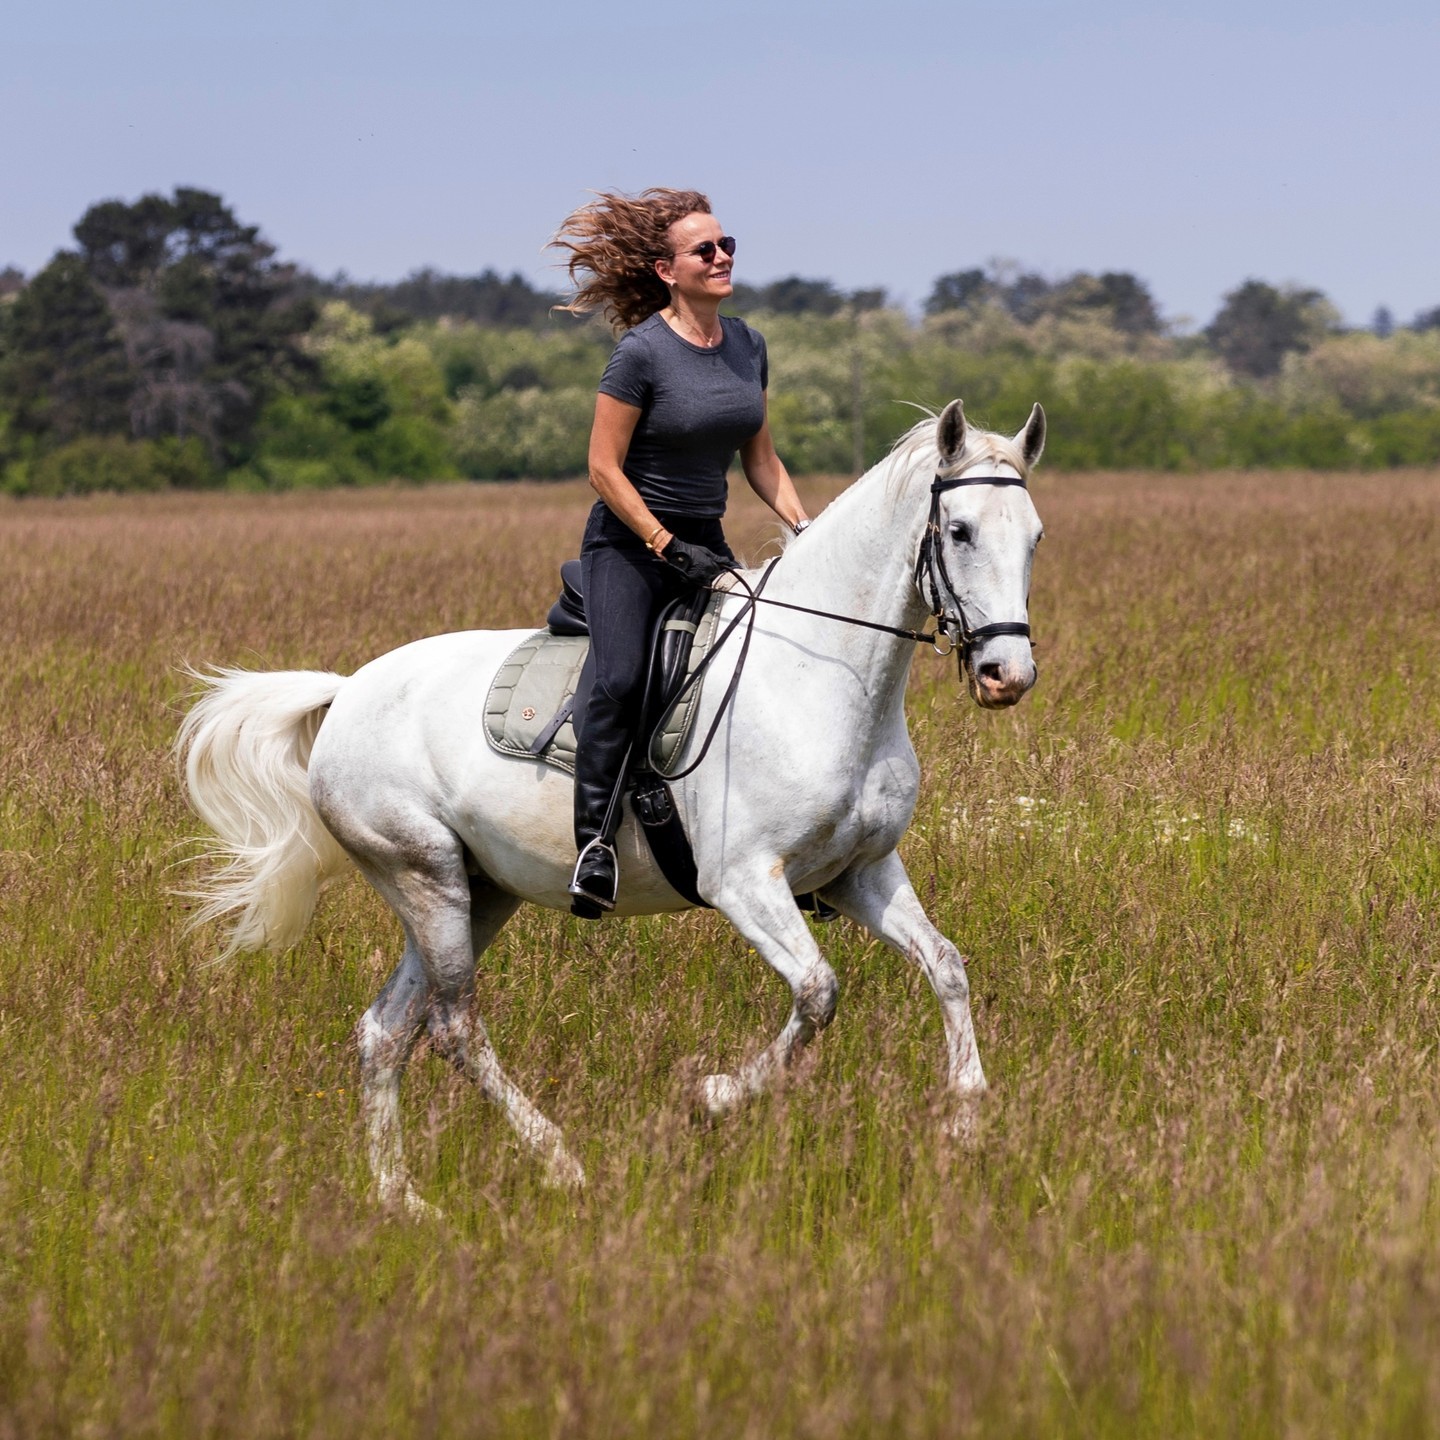 Abschalten und Natur genießen. Christina nutzt das Wochenende gerne für ausgiebige Ausritte. 🐴☀️
.
.
.
.
#buntesteam #leidenschaft #hobby #bcpeople #wochenende #hochdiehändewochenende #weekend #friday #happyday #freizeit #pferde #horse #horsepower #wochenende #weekend #nature #reiten #ausritt #lipizaner #gestütpiber